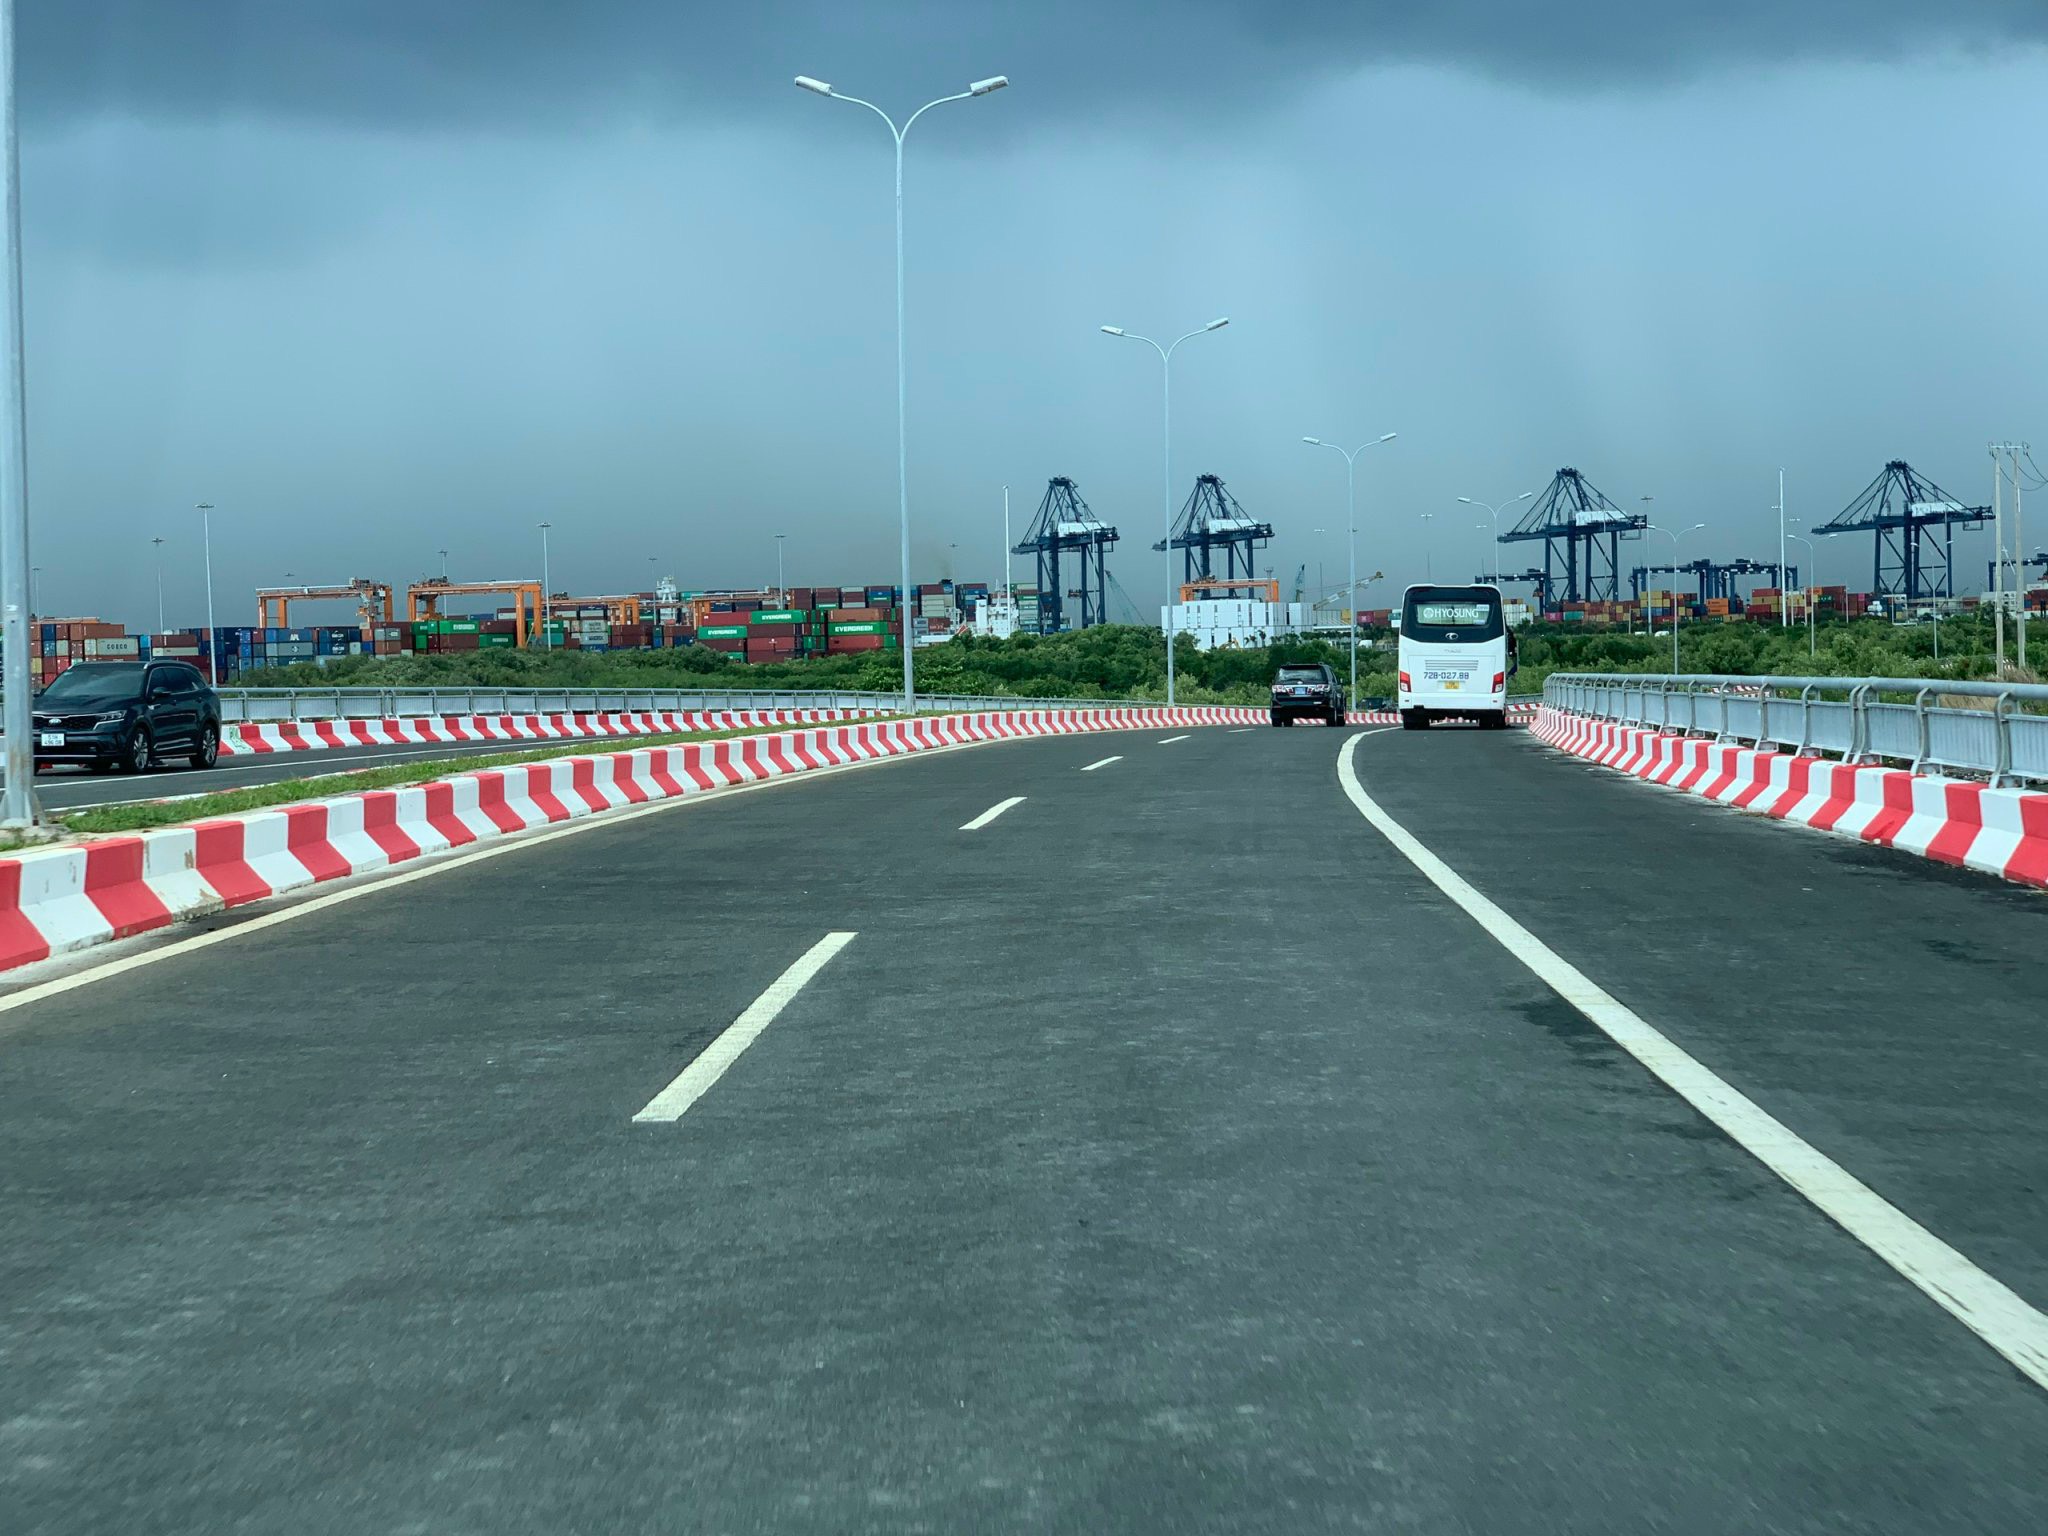 Dự án đường liên cảng Cái Mép -Thị Vải giúp hỗ trợ đồng bộ, kết nối hệ thống giao thông trong khu vực, nâng cao hiệu quả sử dụng của các cảng và khu vực cảng. Ảnh: THANH NGA